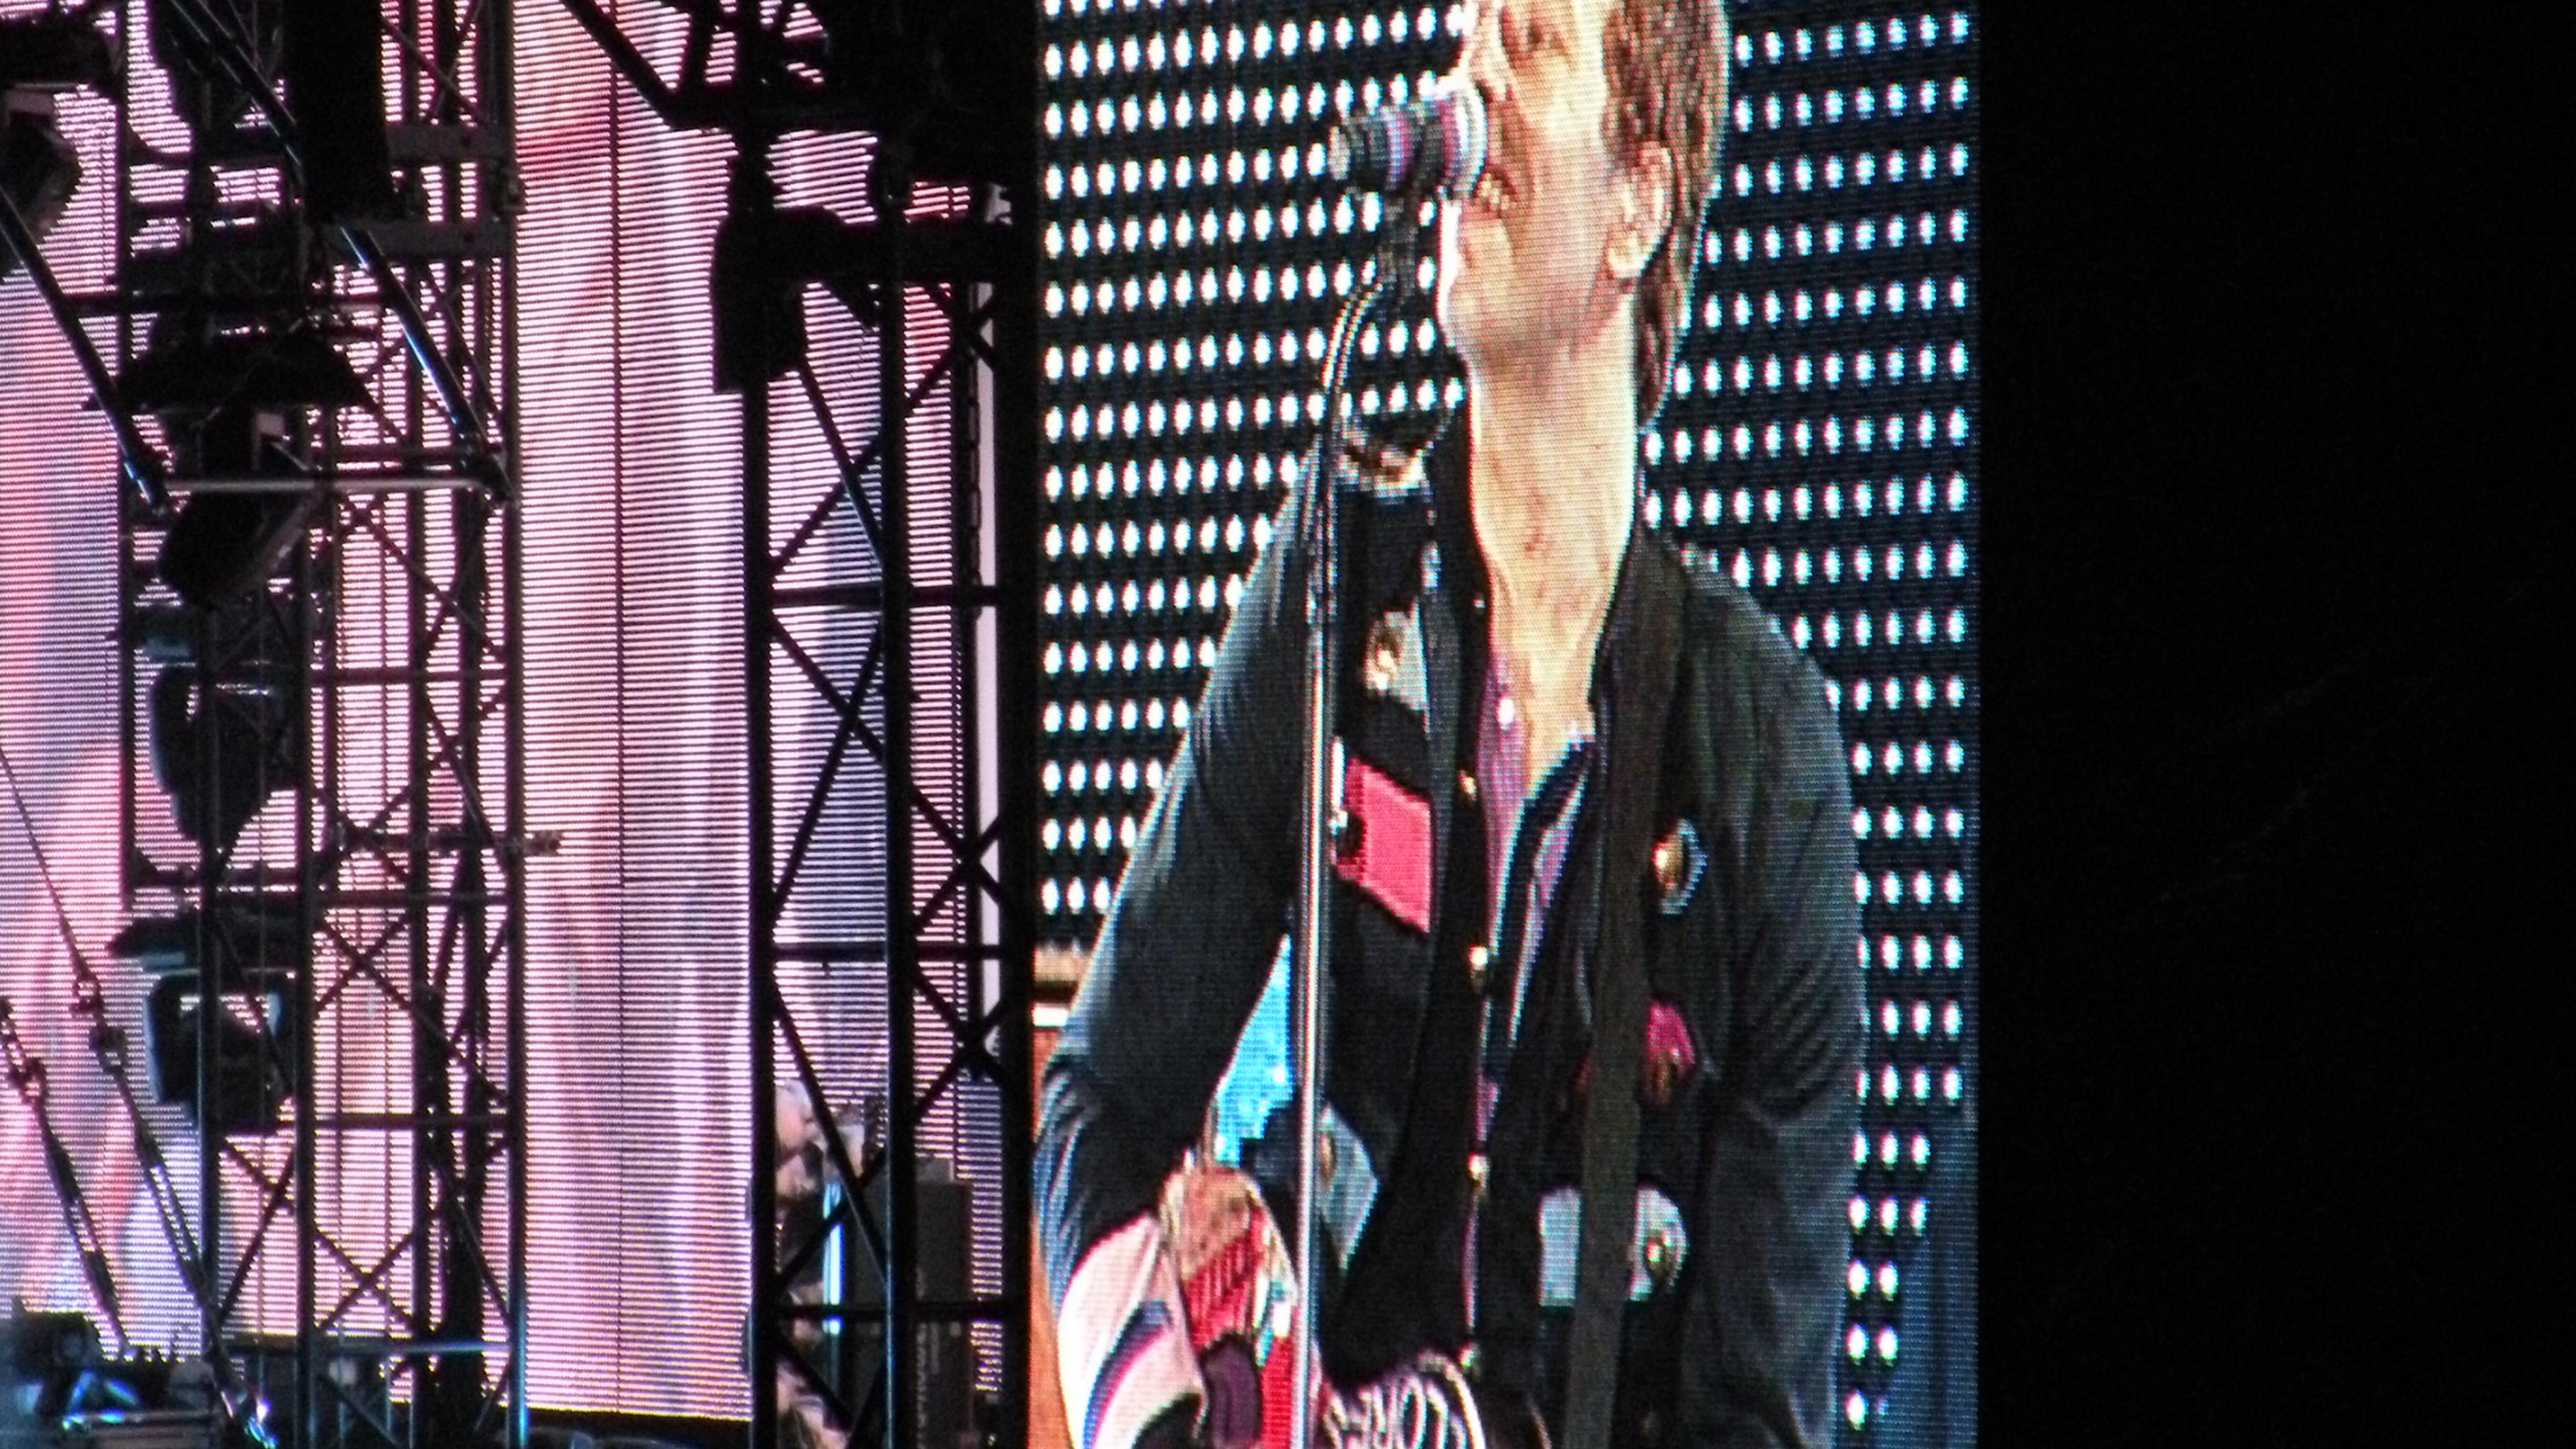 Sänger Chris Martin beim Coldplay-Konzert